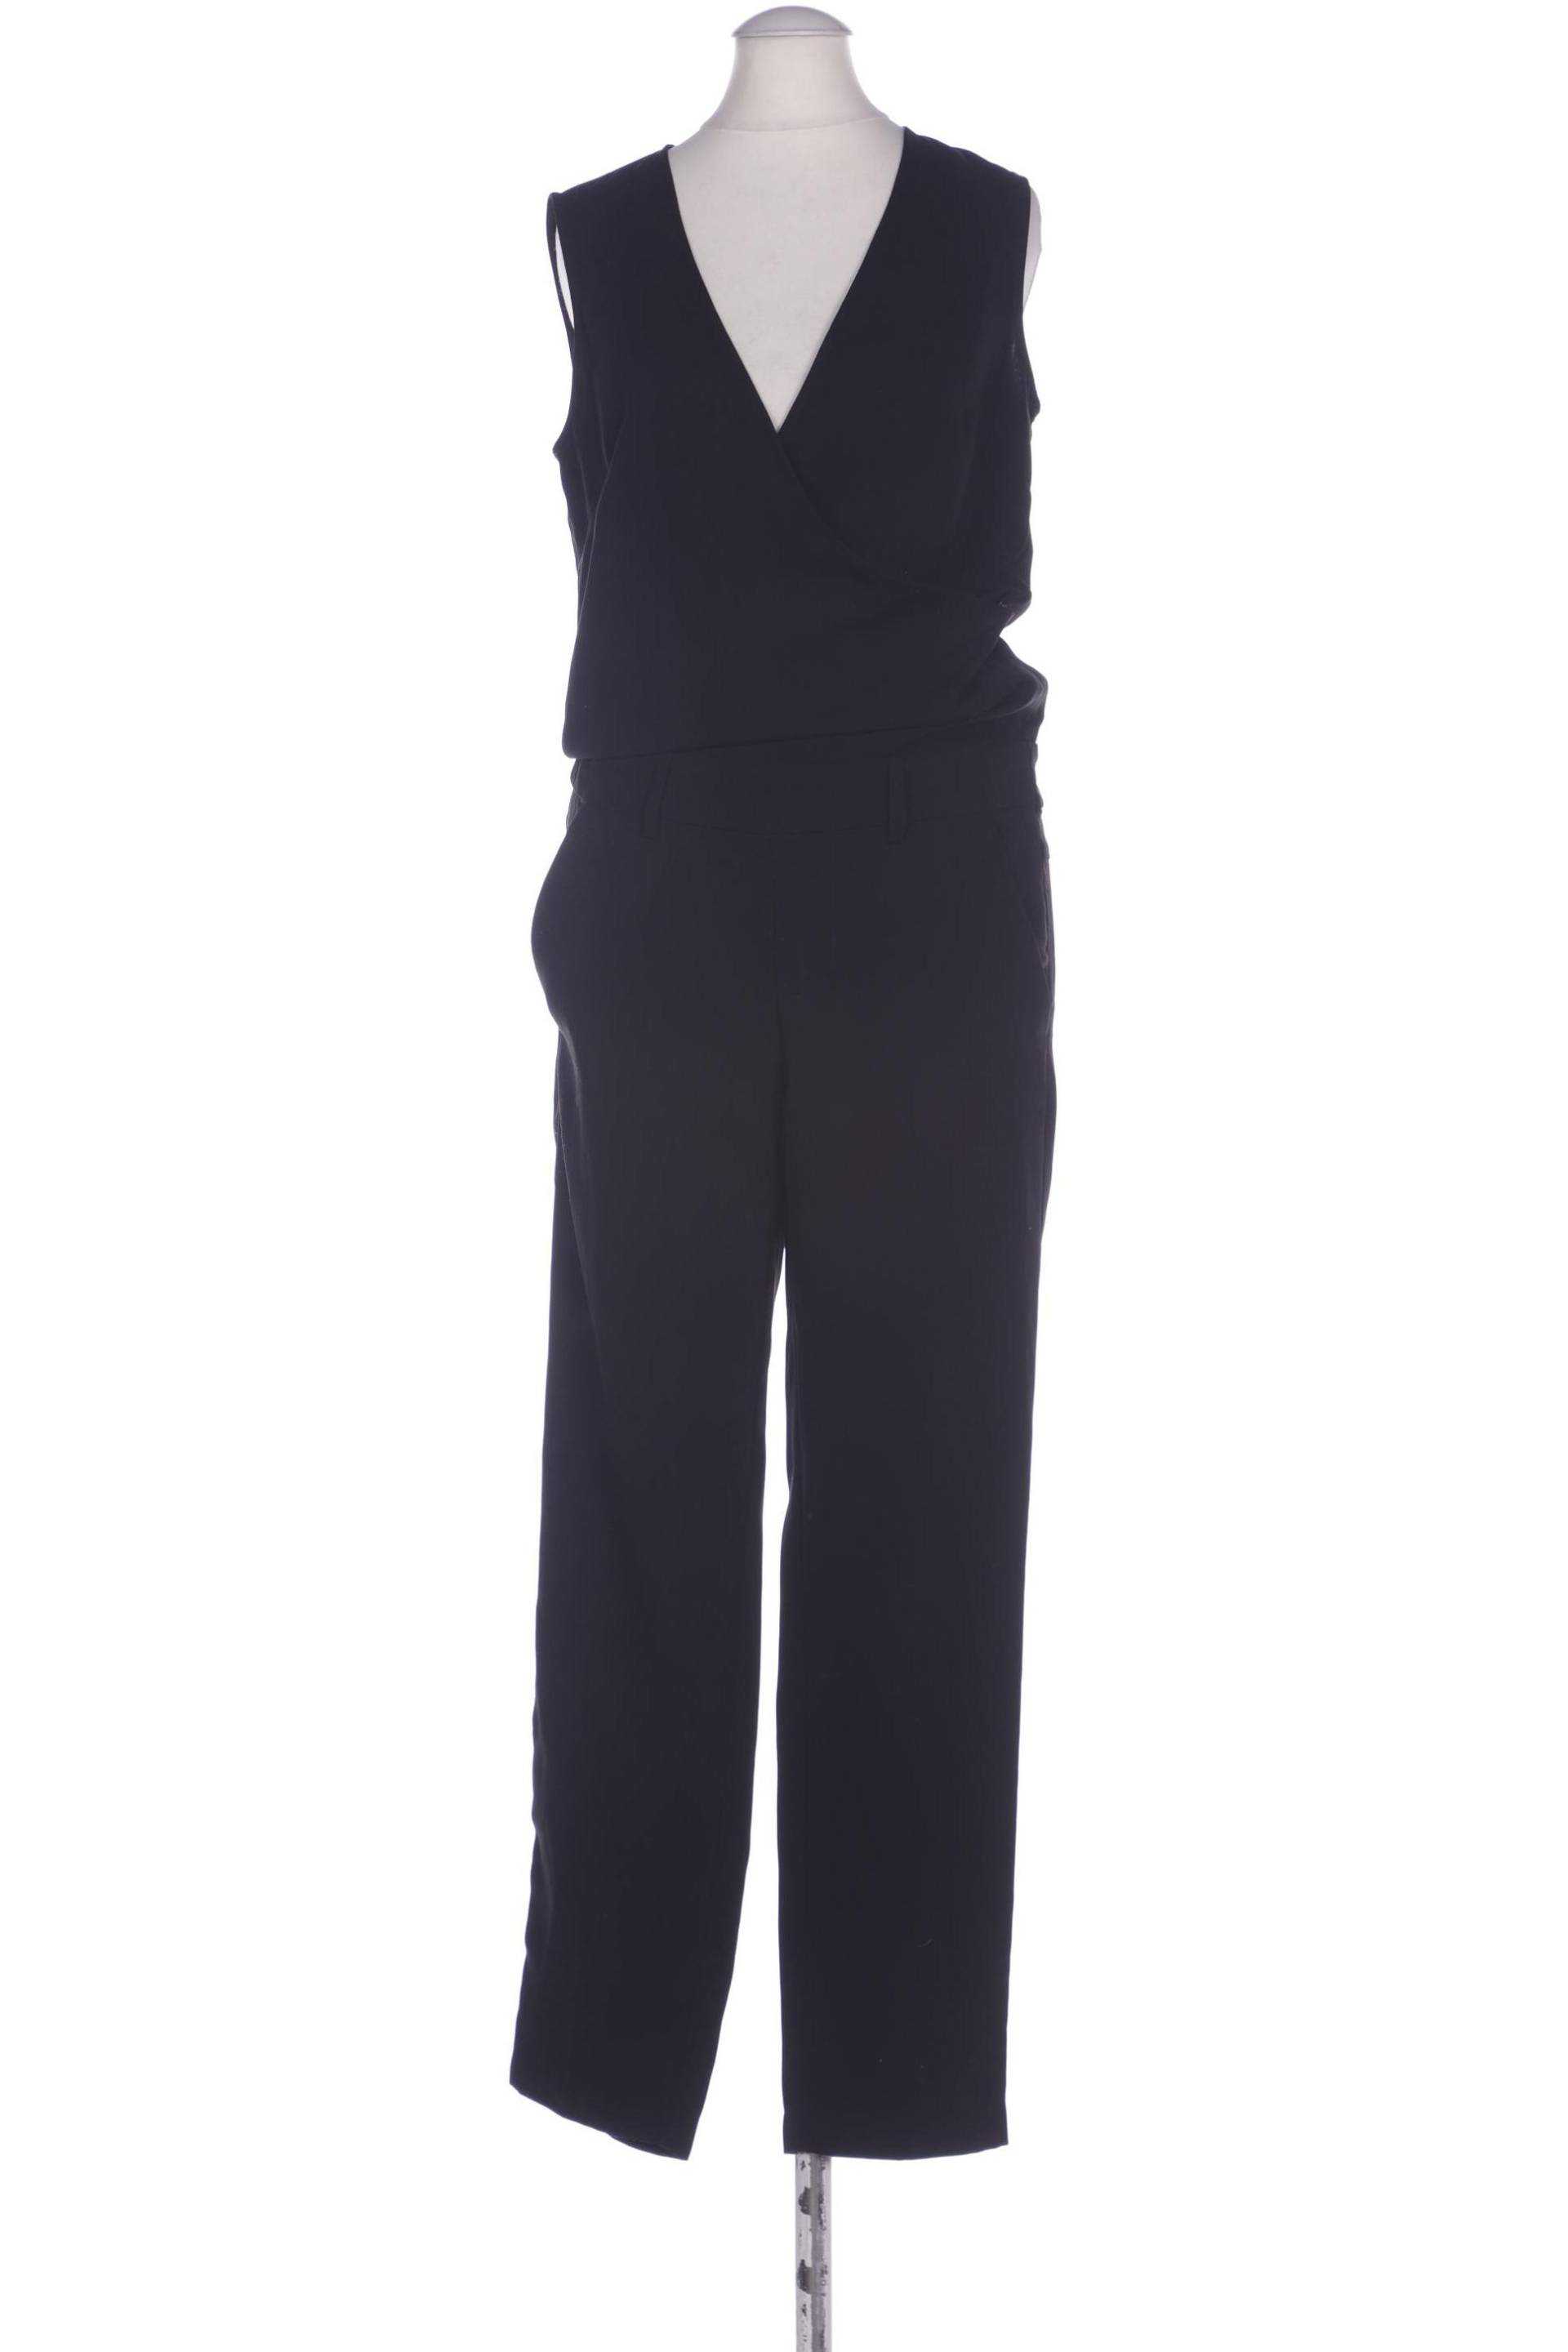 UNITED COLORS OF BENETTON Damen Jumpsuit/Overall, schwarz von United Colors of Benetton